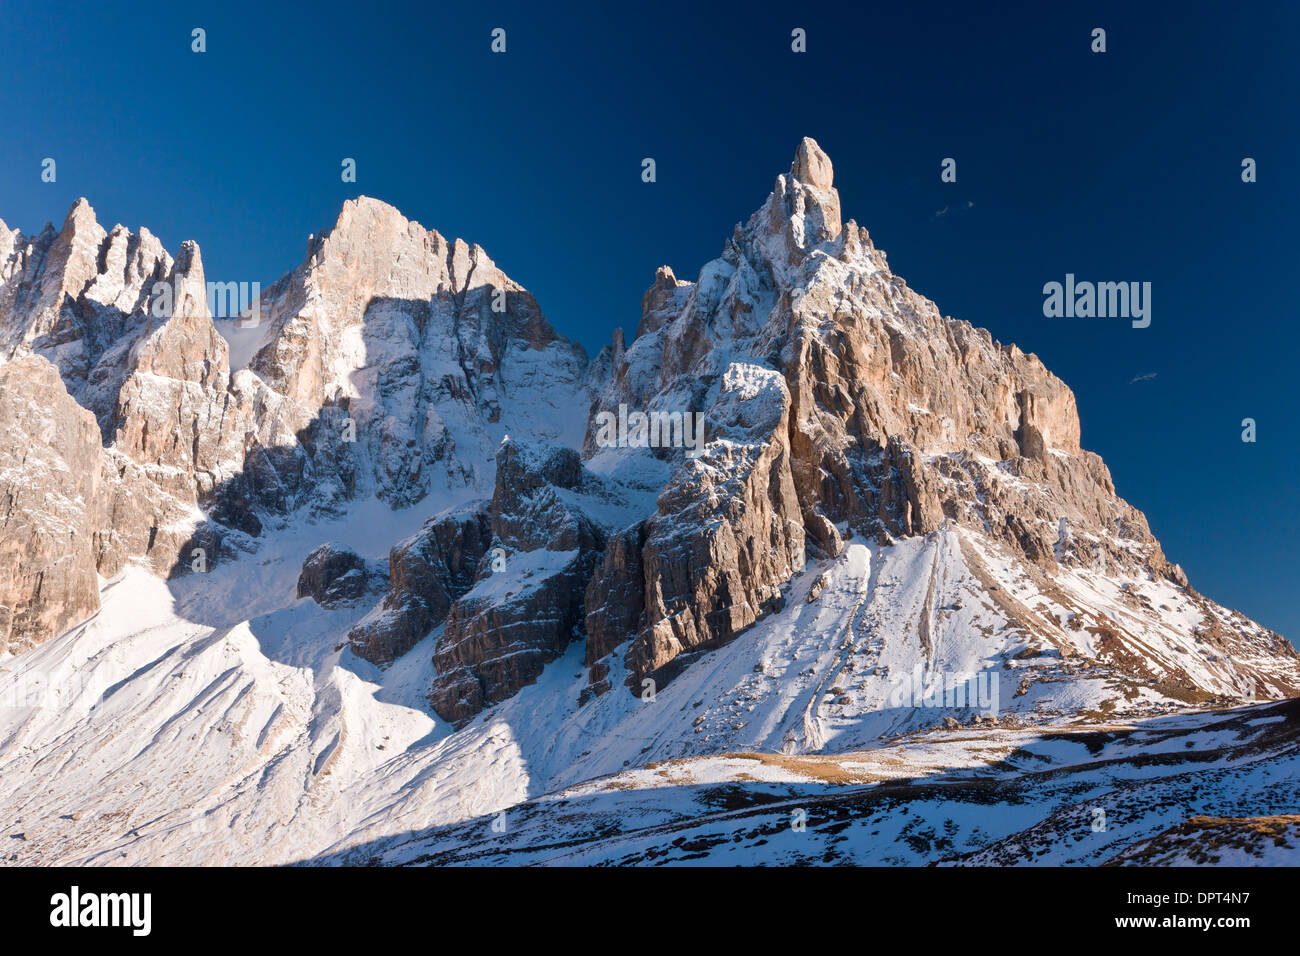 Montagne sopra il Passo Rolle, il Cimon della Pala, in autunno dopo la prima neve; Dolomiti, nord Italia. Foto Stock